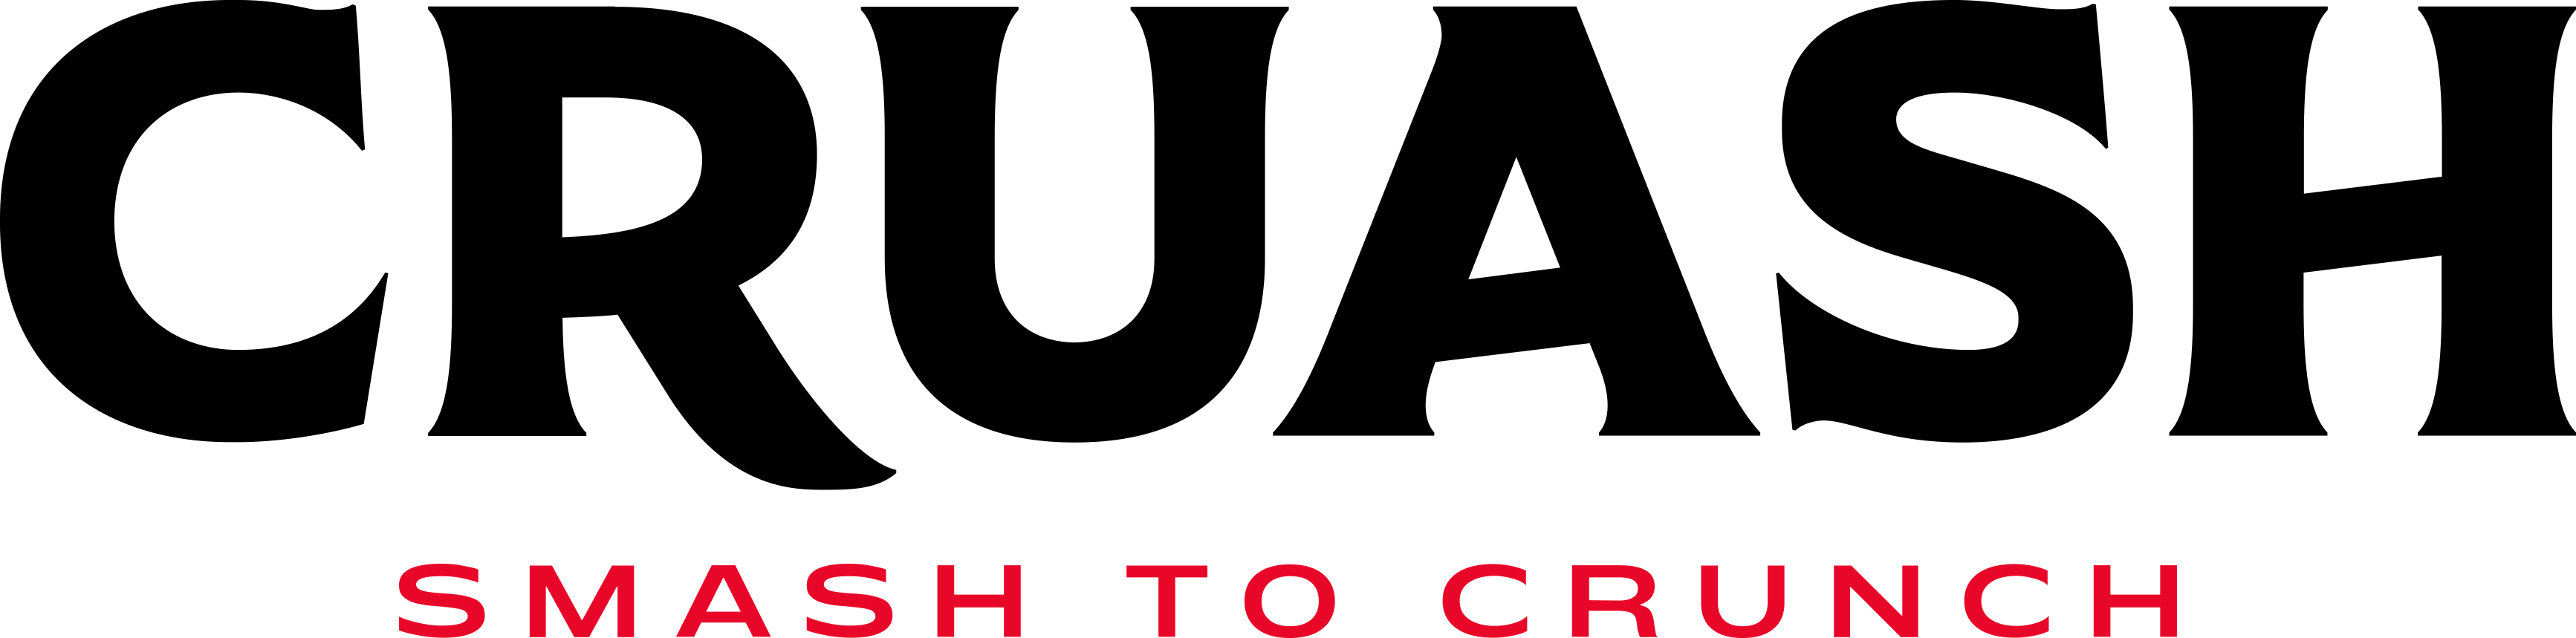 logo-cruash-smash-to-crunch